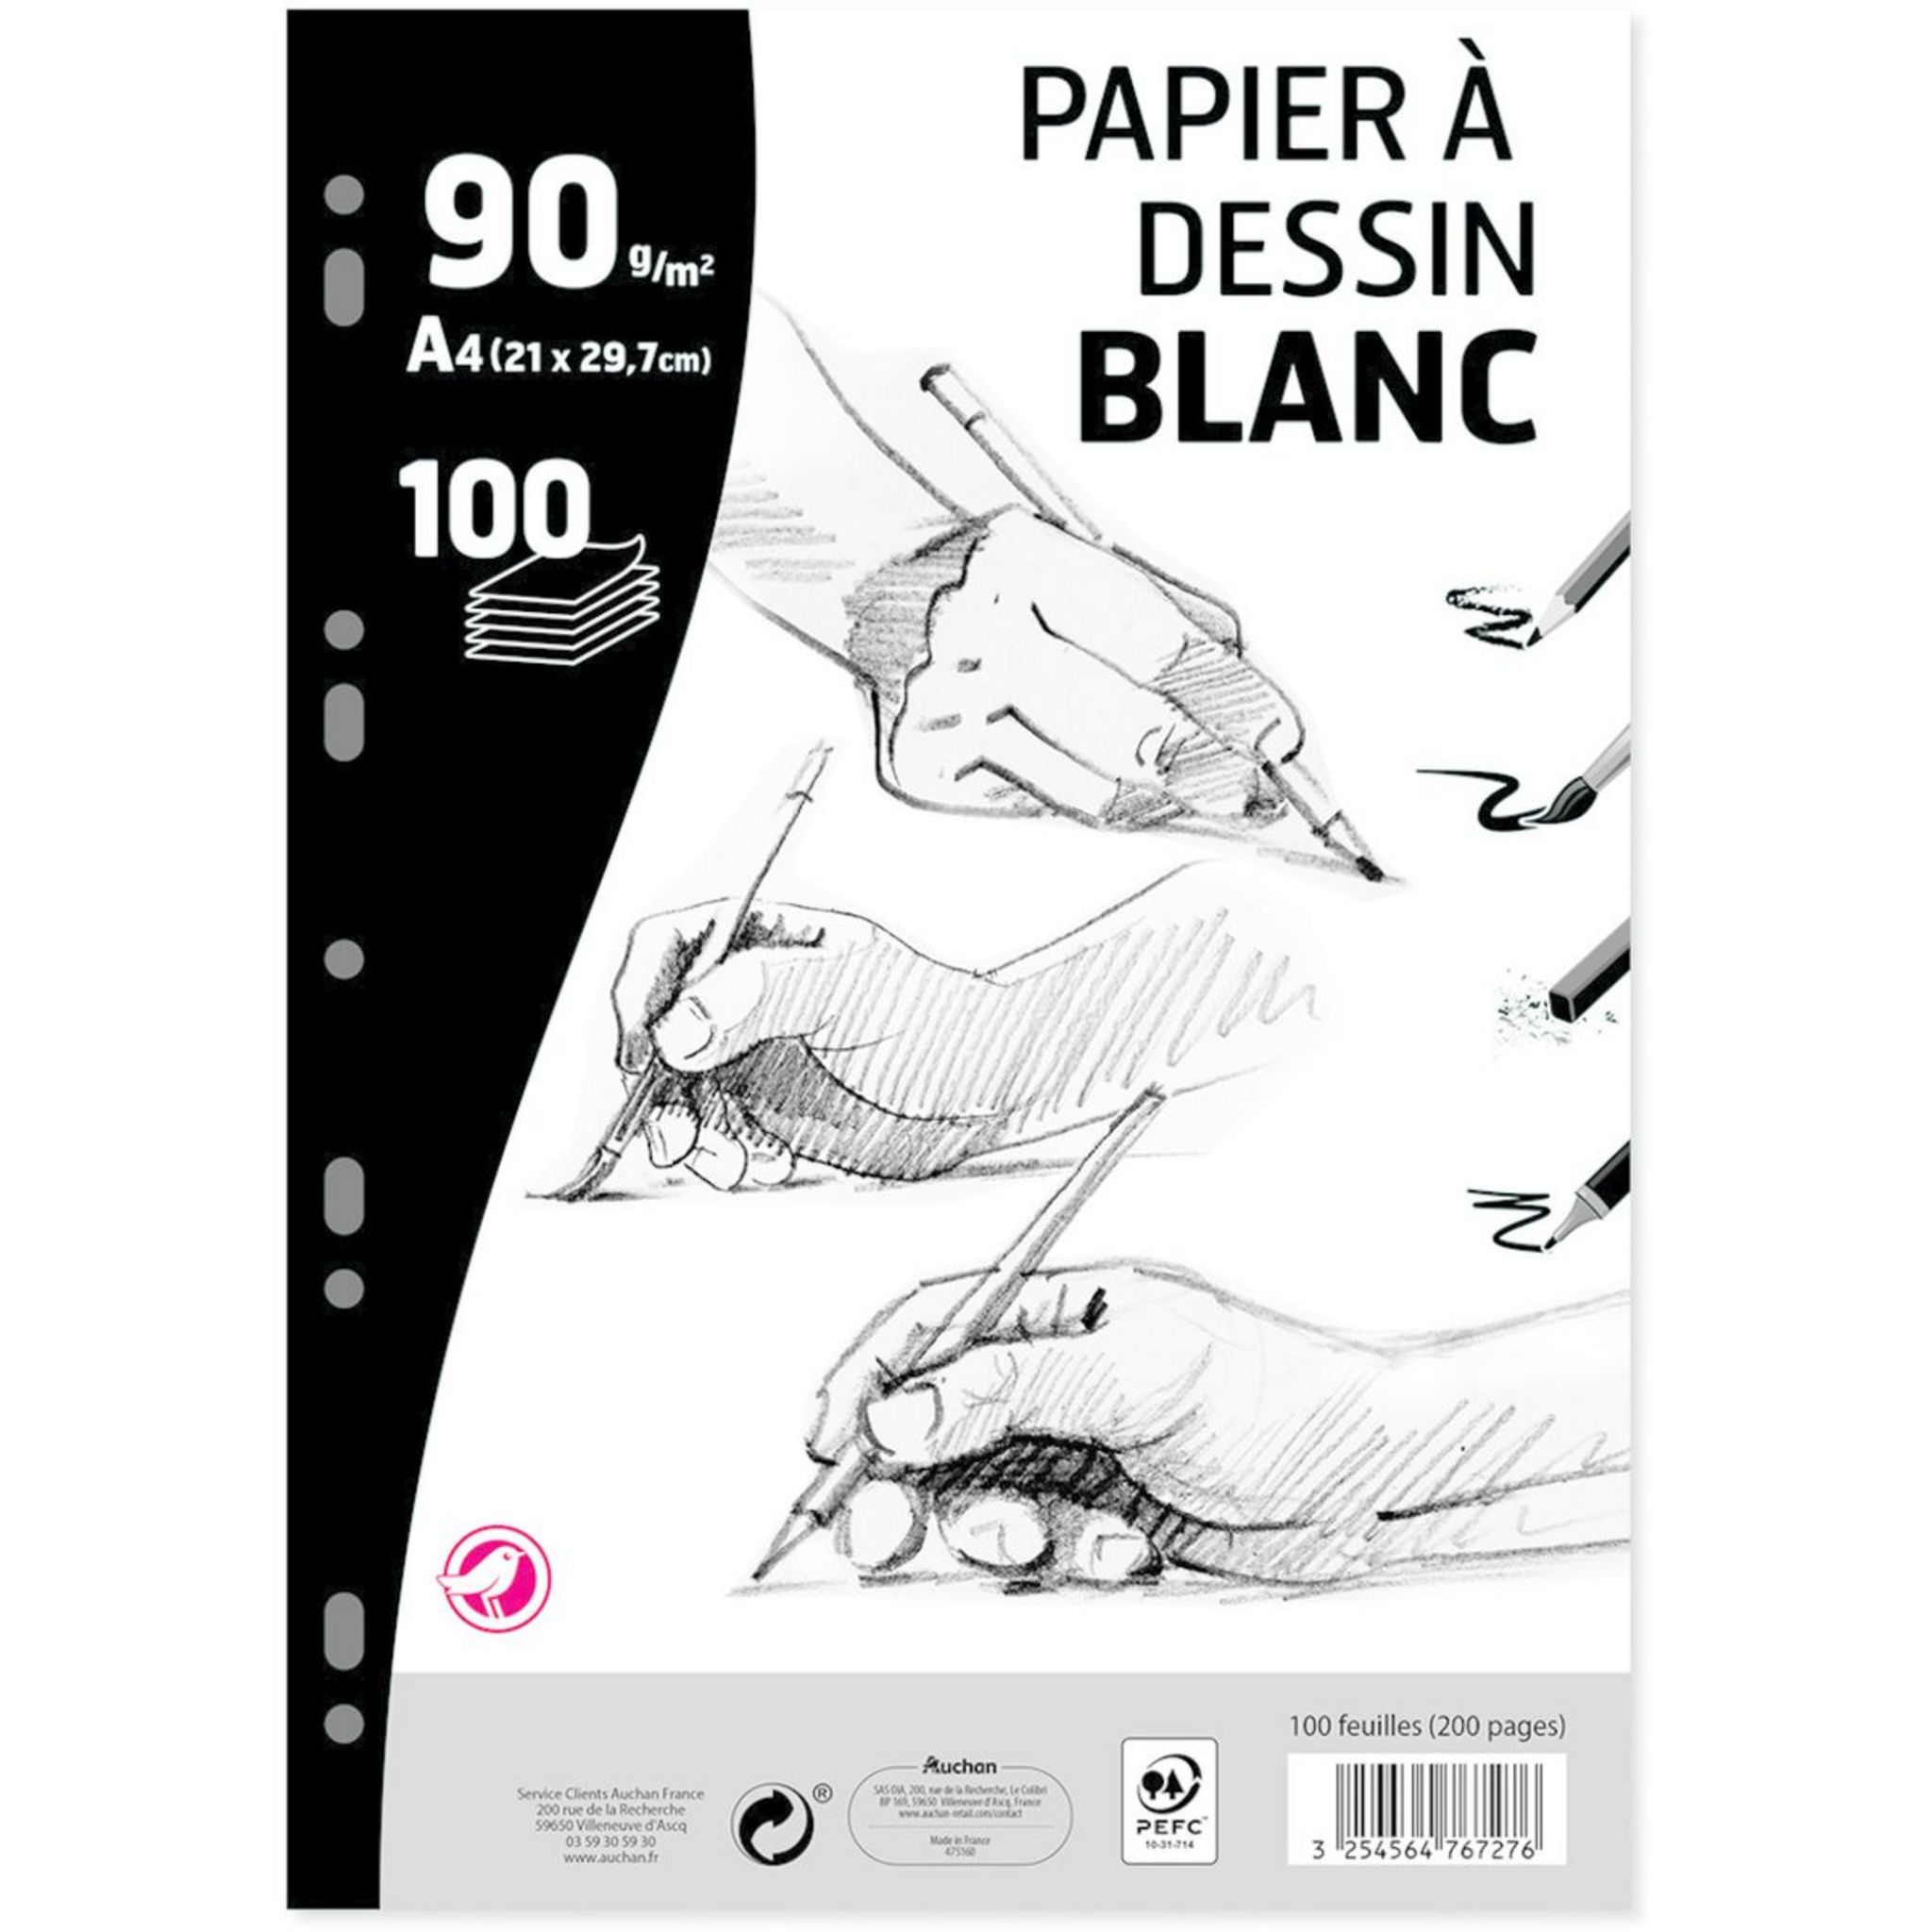 Papier calque A4 Clairefontaine - Bonne-Rentree